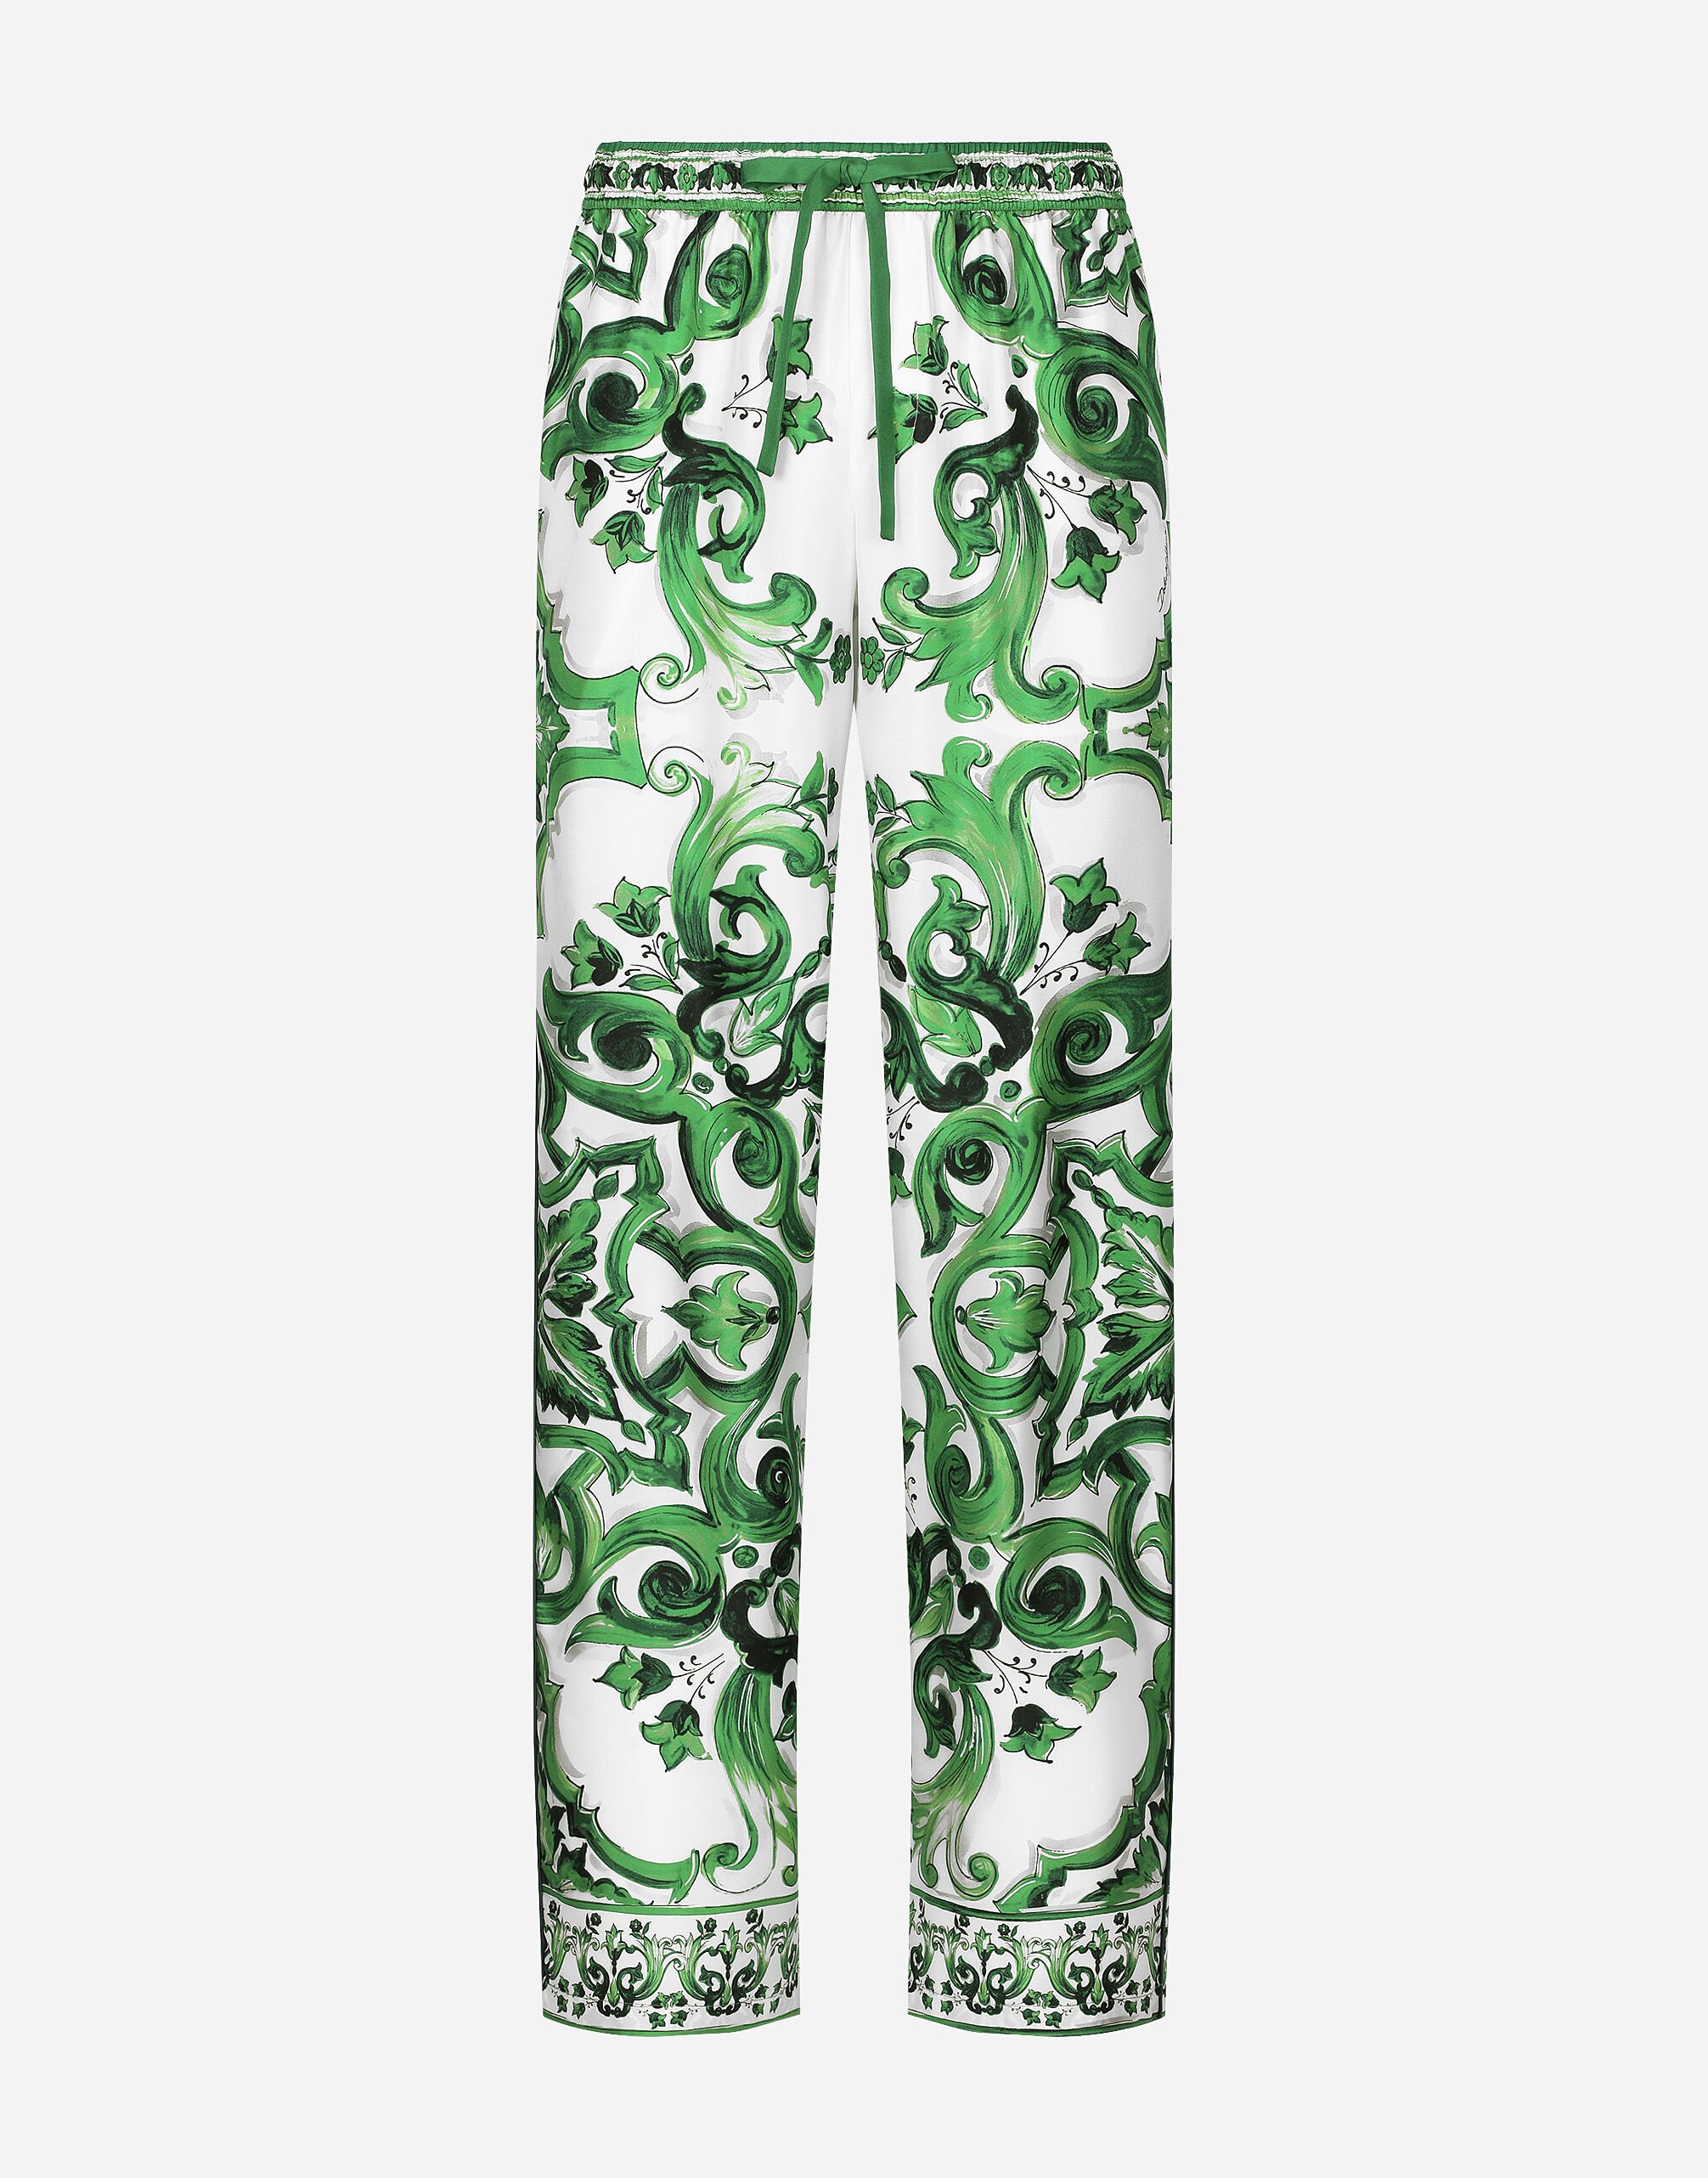 Dolce & Gabbana Pantalón estilo jogger en sarga de seda con estampado Maiolica Imprima G5JH9THI1S6